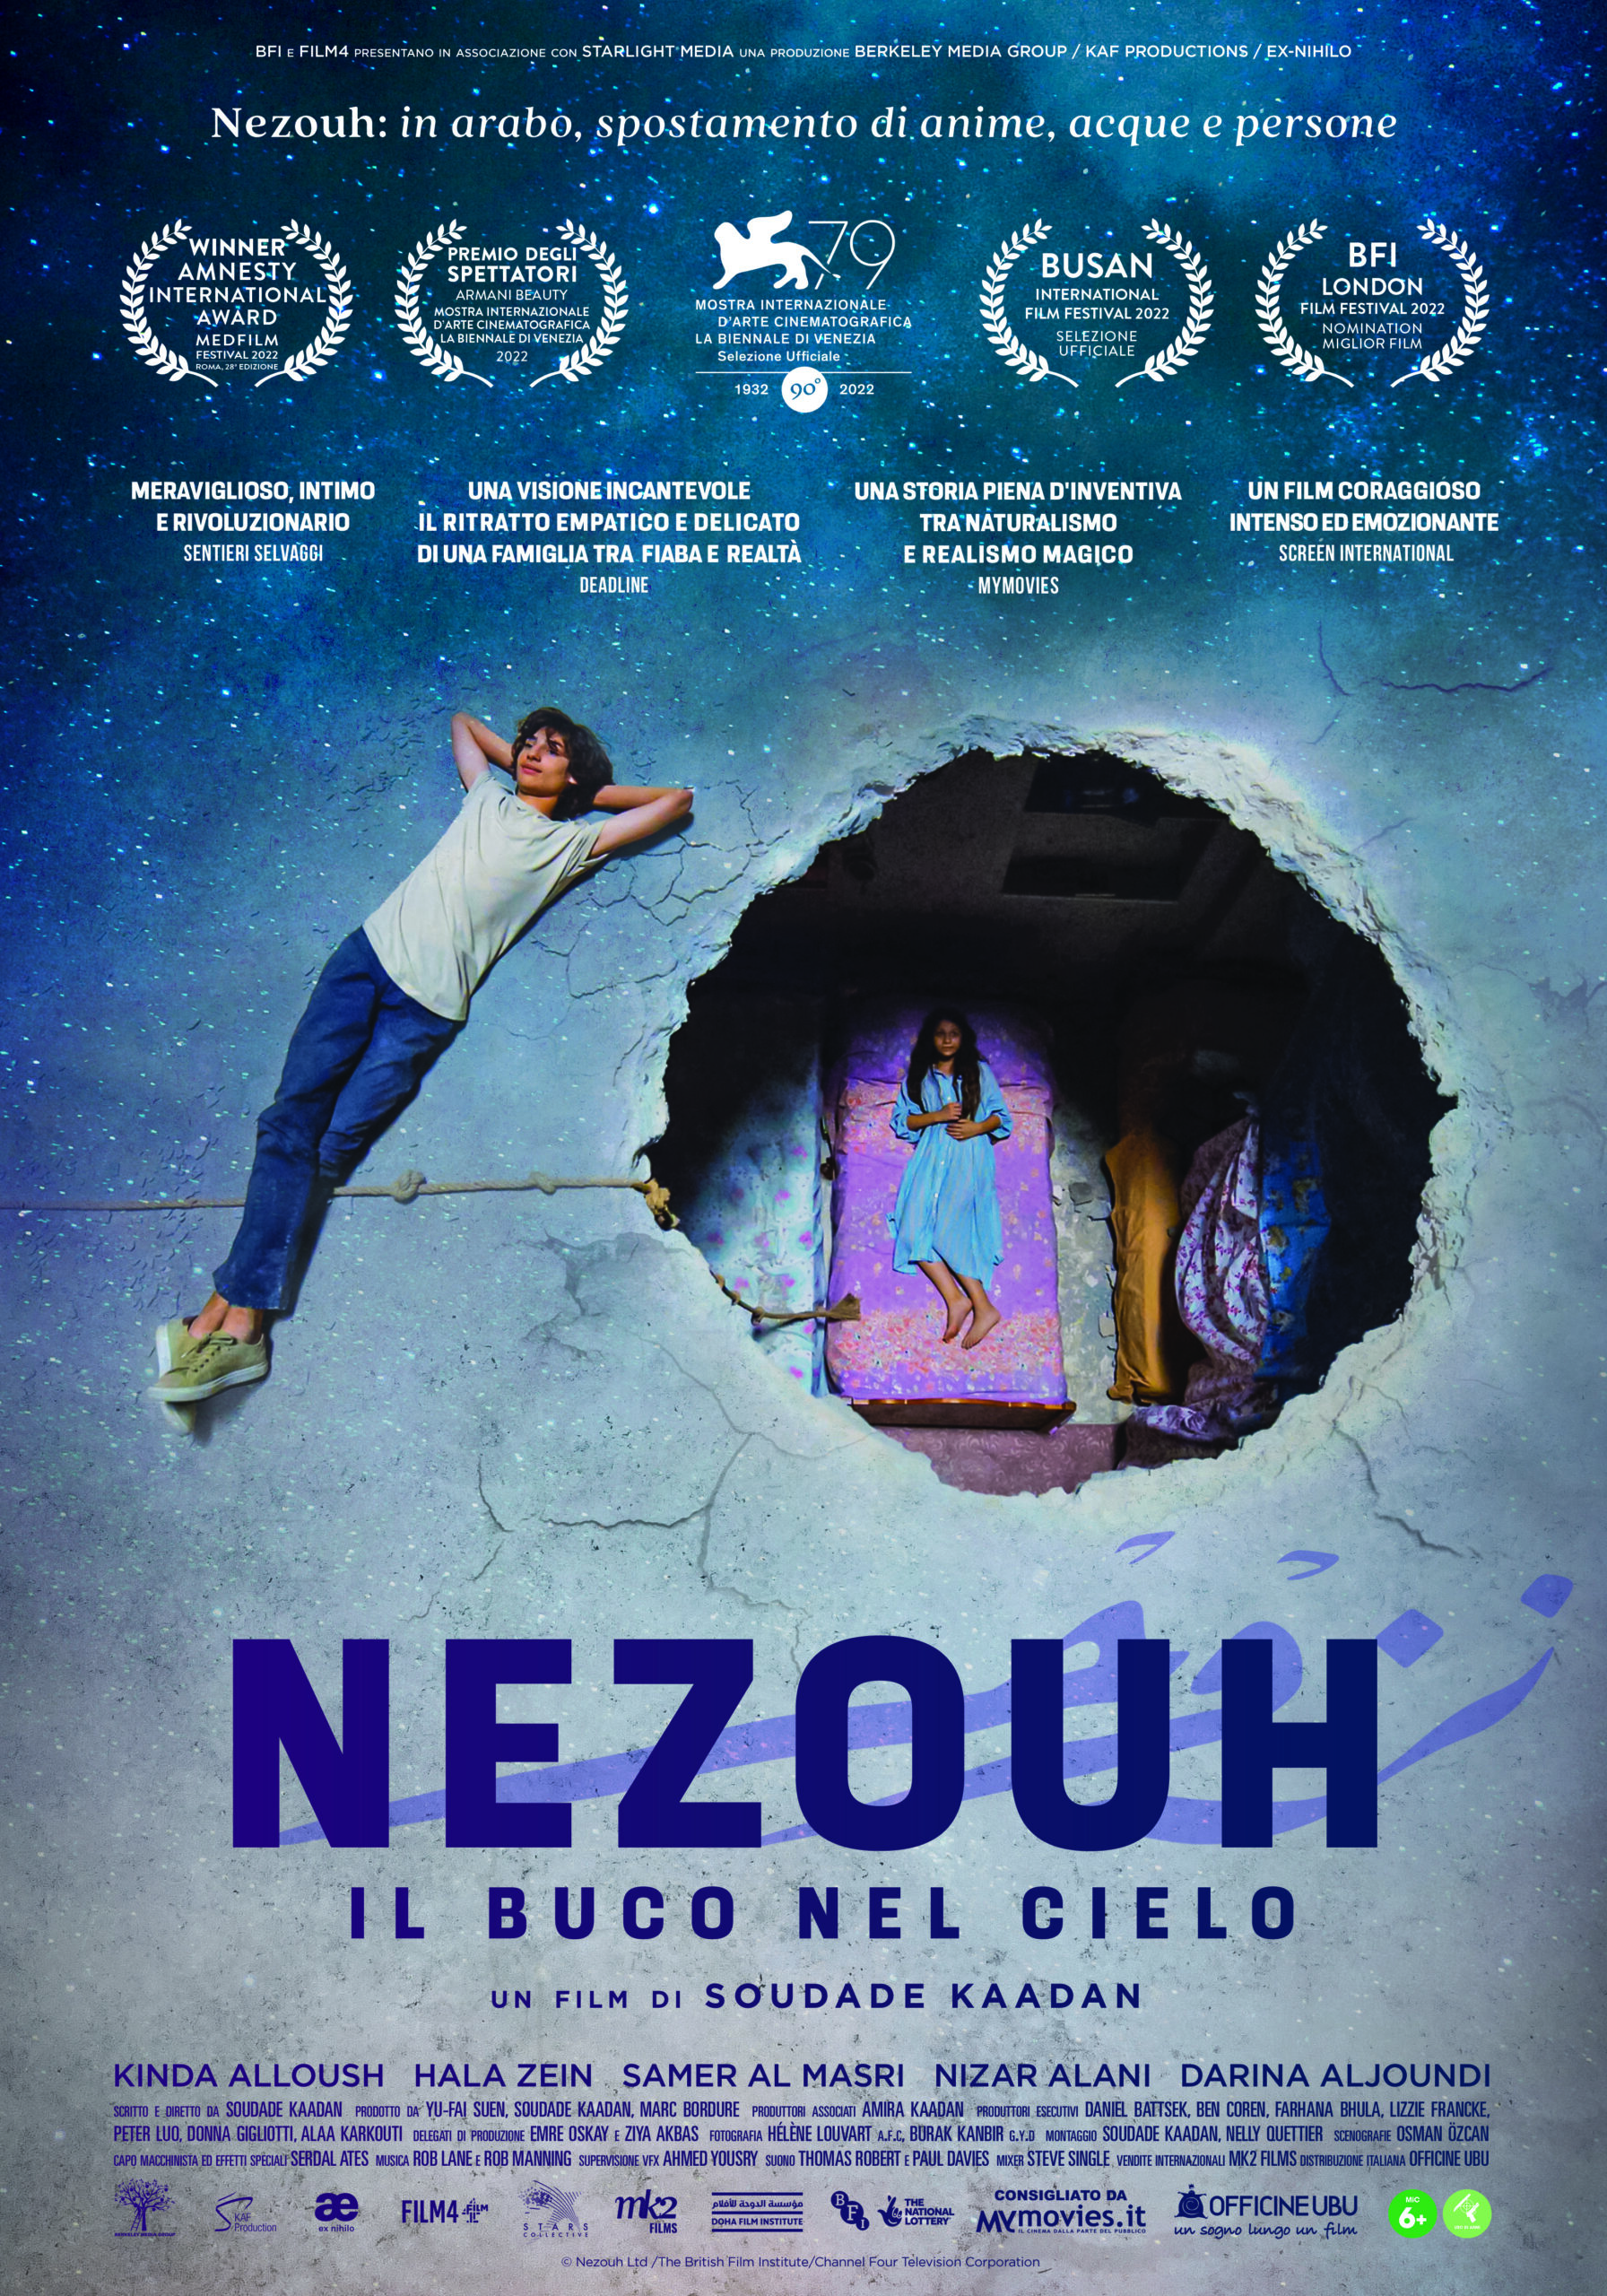 Nezouh - Il buco nel cielo